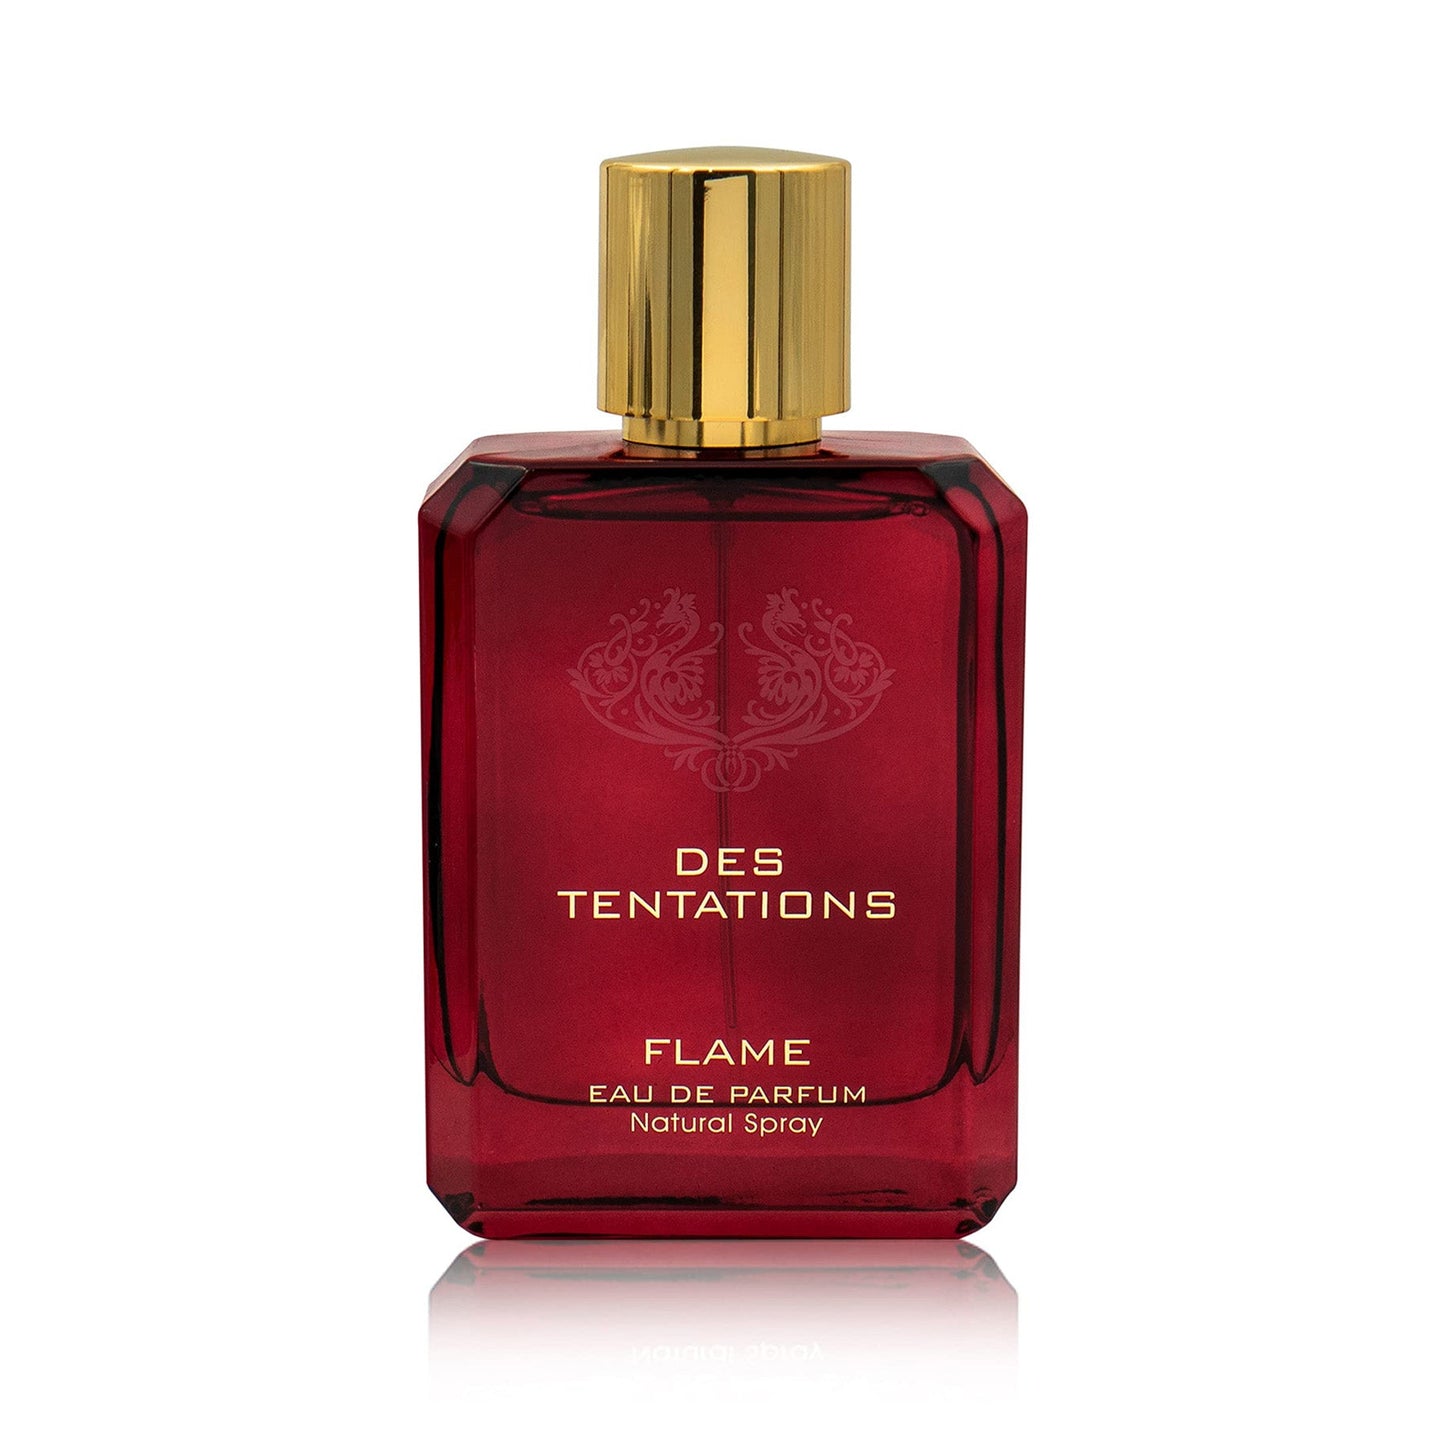 Des Tentations Flame Eau de Parfum 100ml Fragrance World